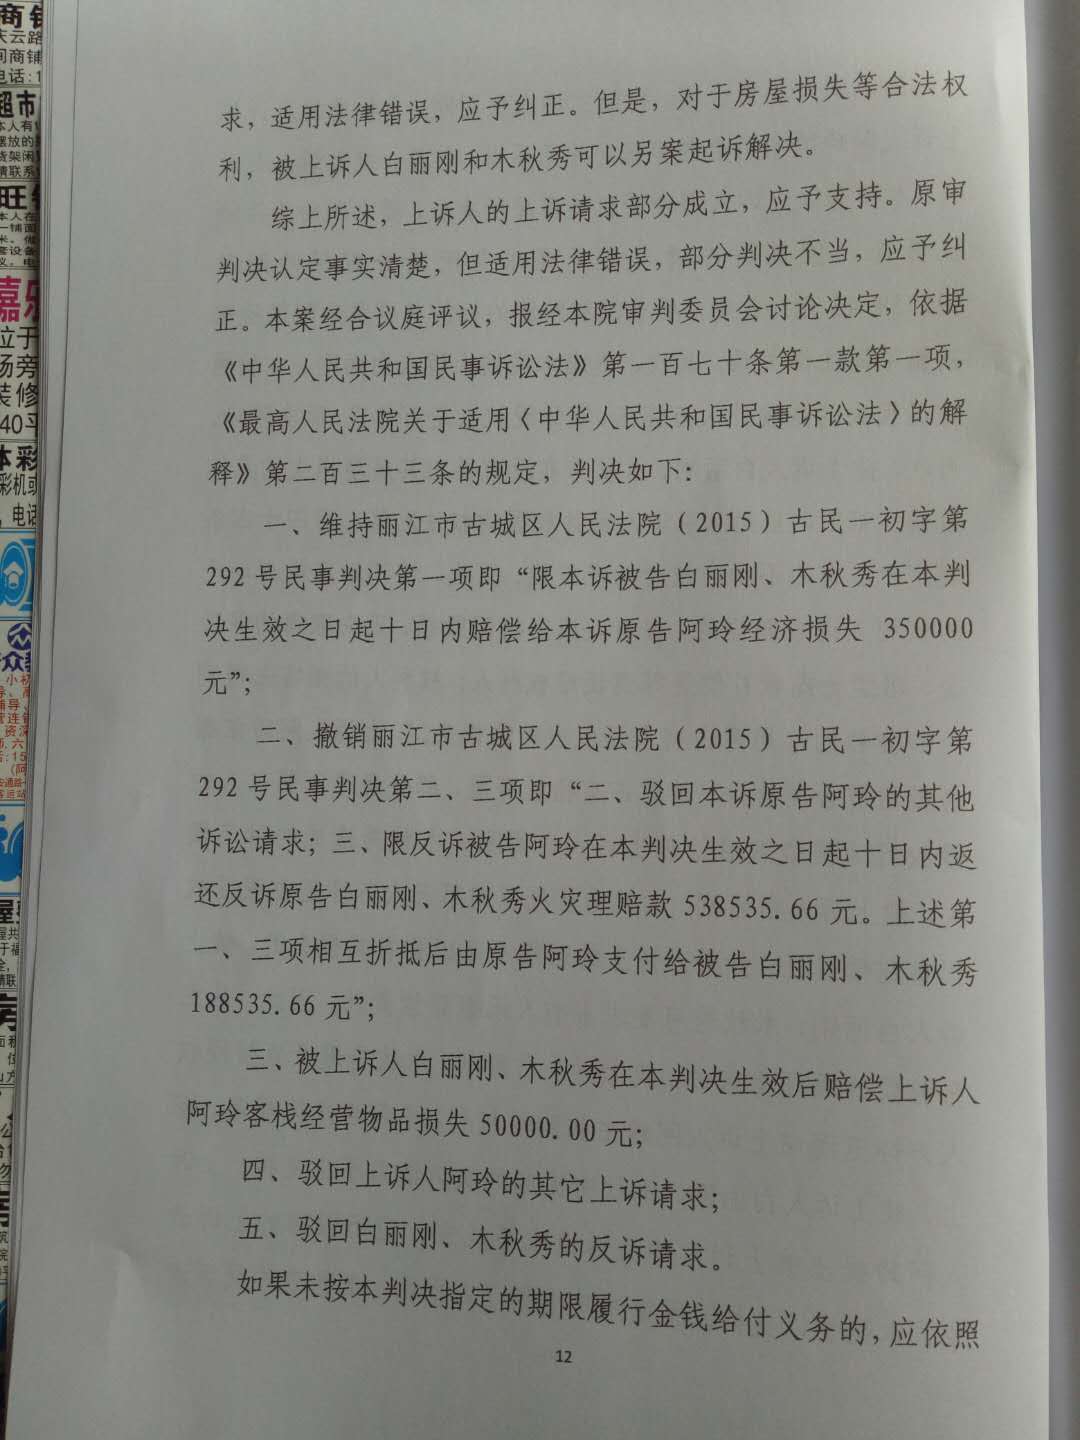 丽江房东毁约赶人案终审:合同有效 房东需赔40万